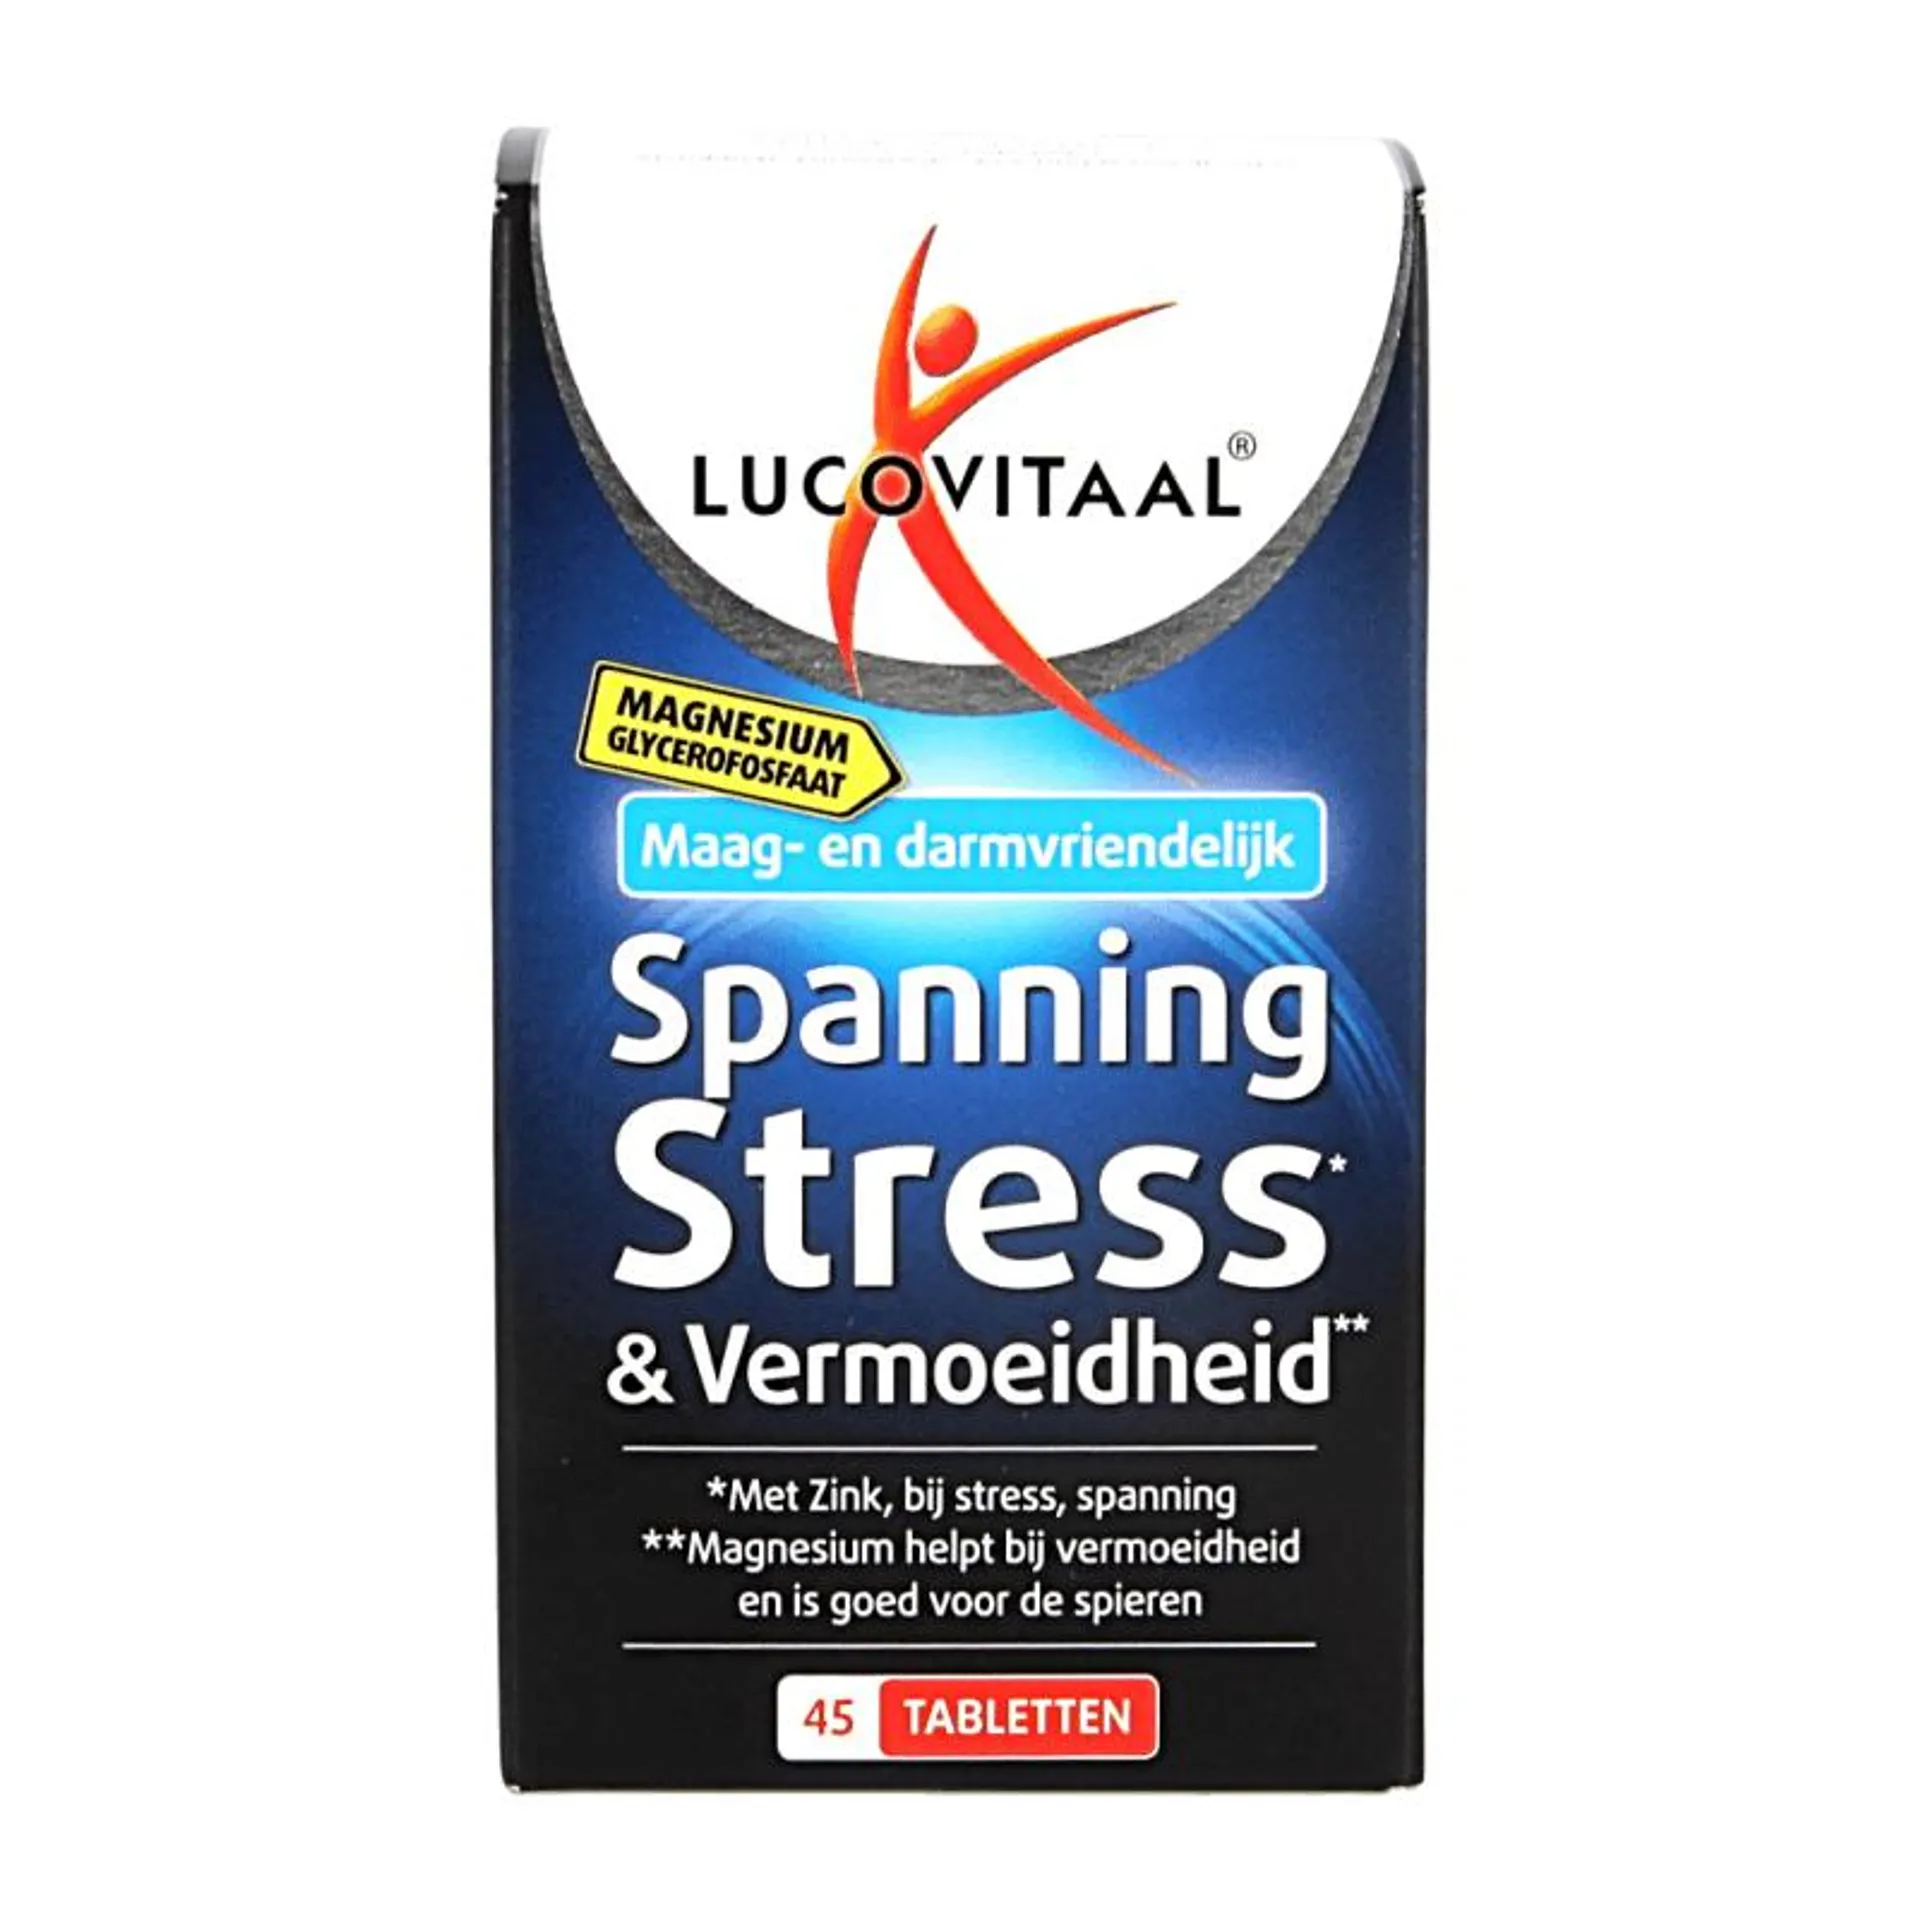 Lucovitaal Magnesium spanning stress & vermoeidheid 45 tabletten